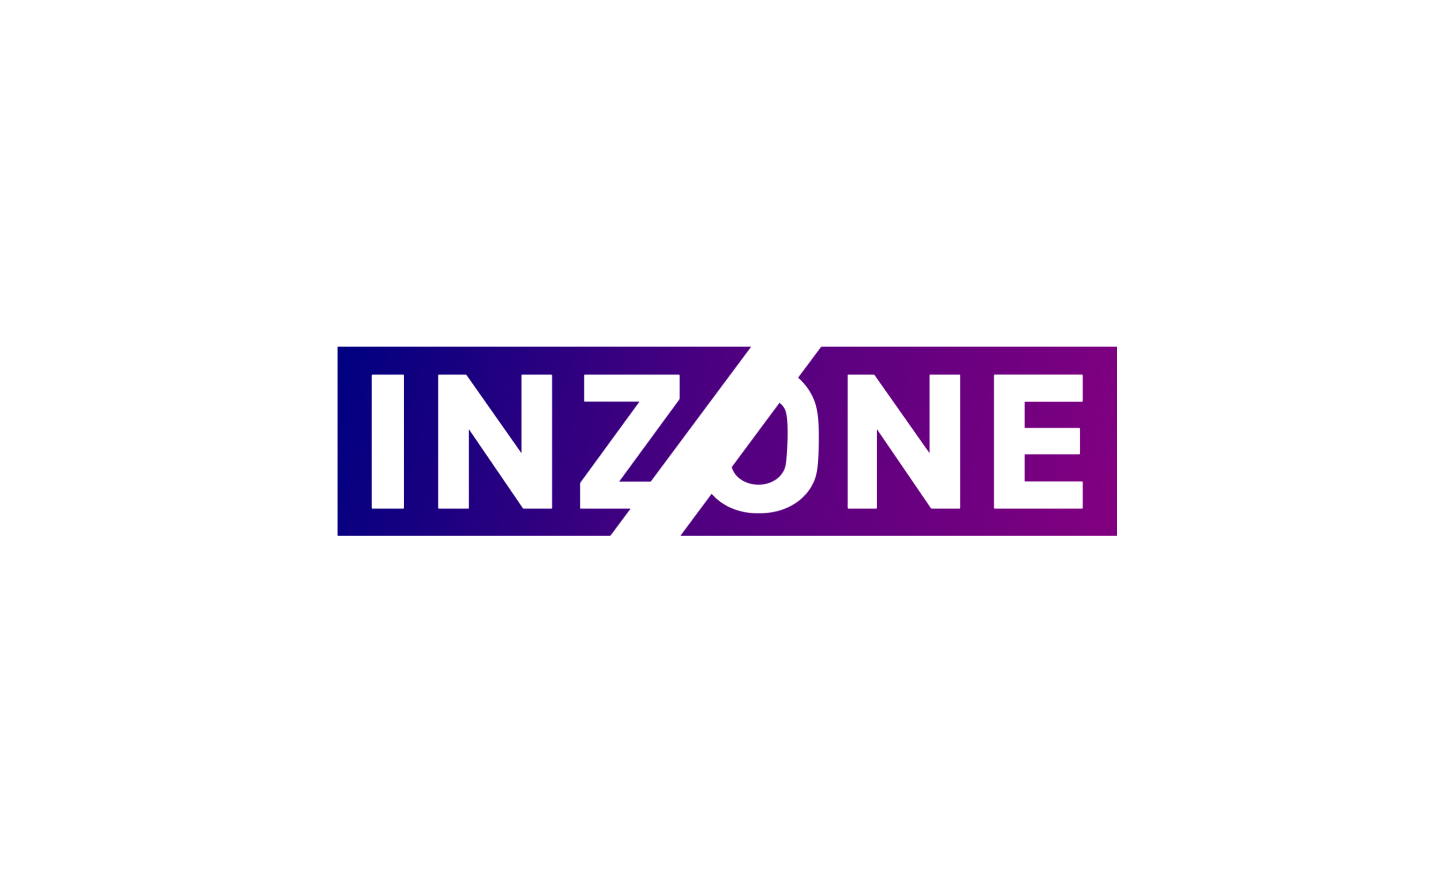 Az Inzone logója